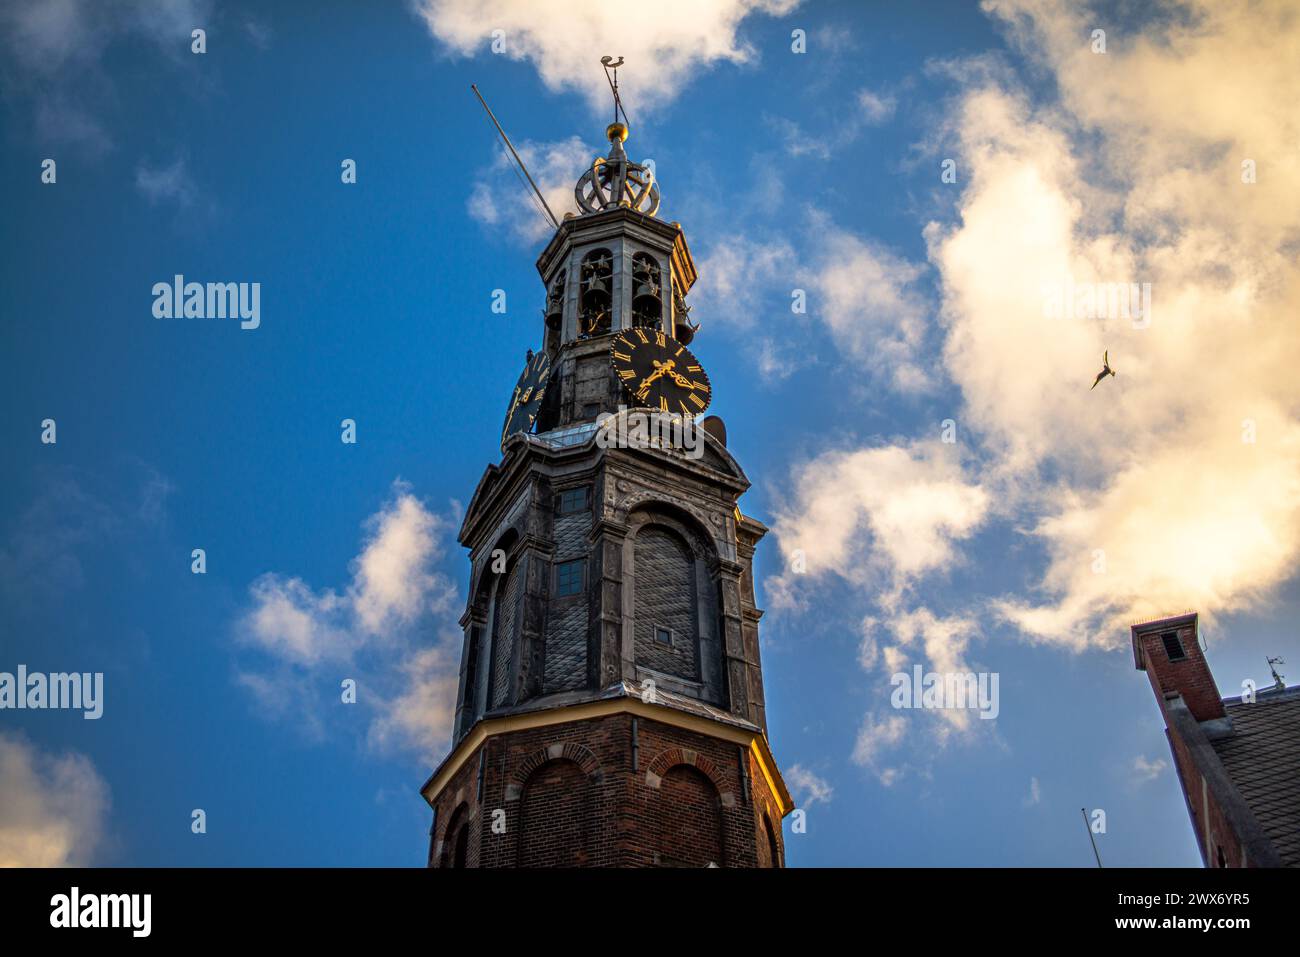 Steigen Sie auf den Gipfel einer alten Kirche in Amsterdam, um einen Panoramablick zu genießen, wo historische Türme den Himmel in dieser ikonischen europäischen Stadtlandschaft berühren. Stockfoto